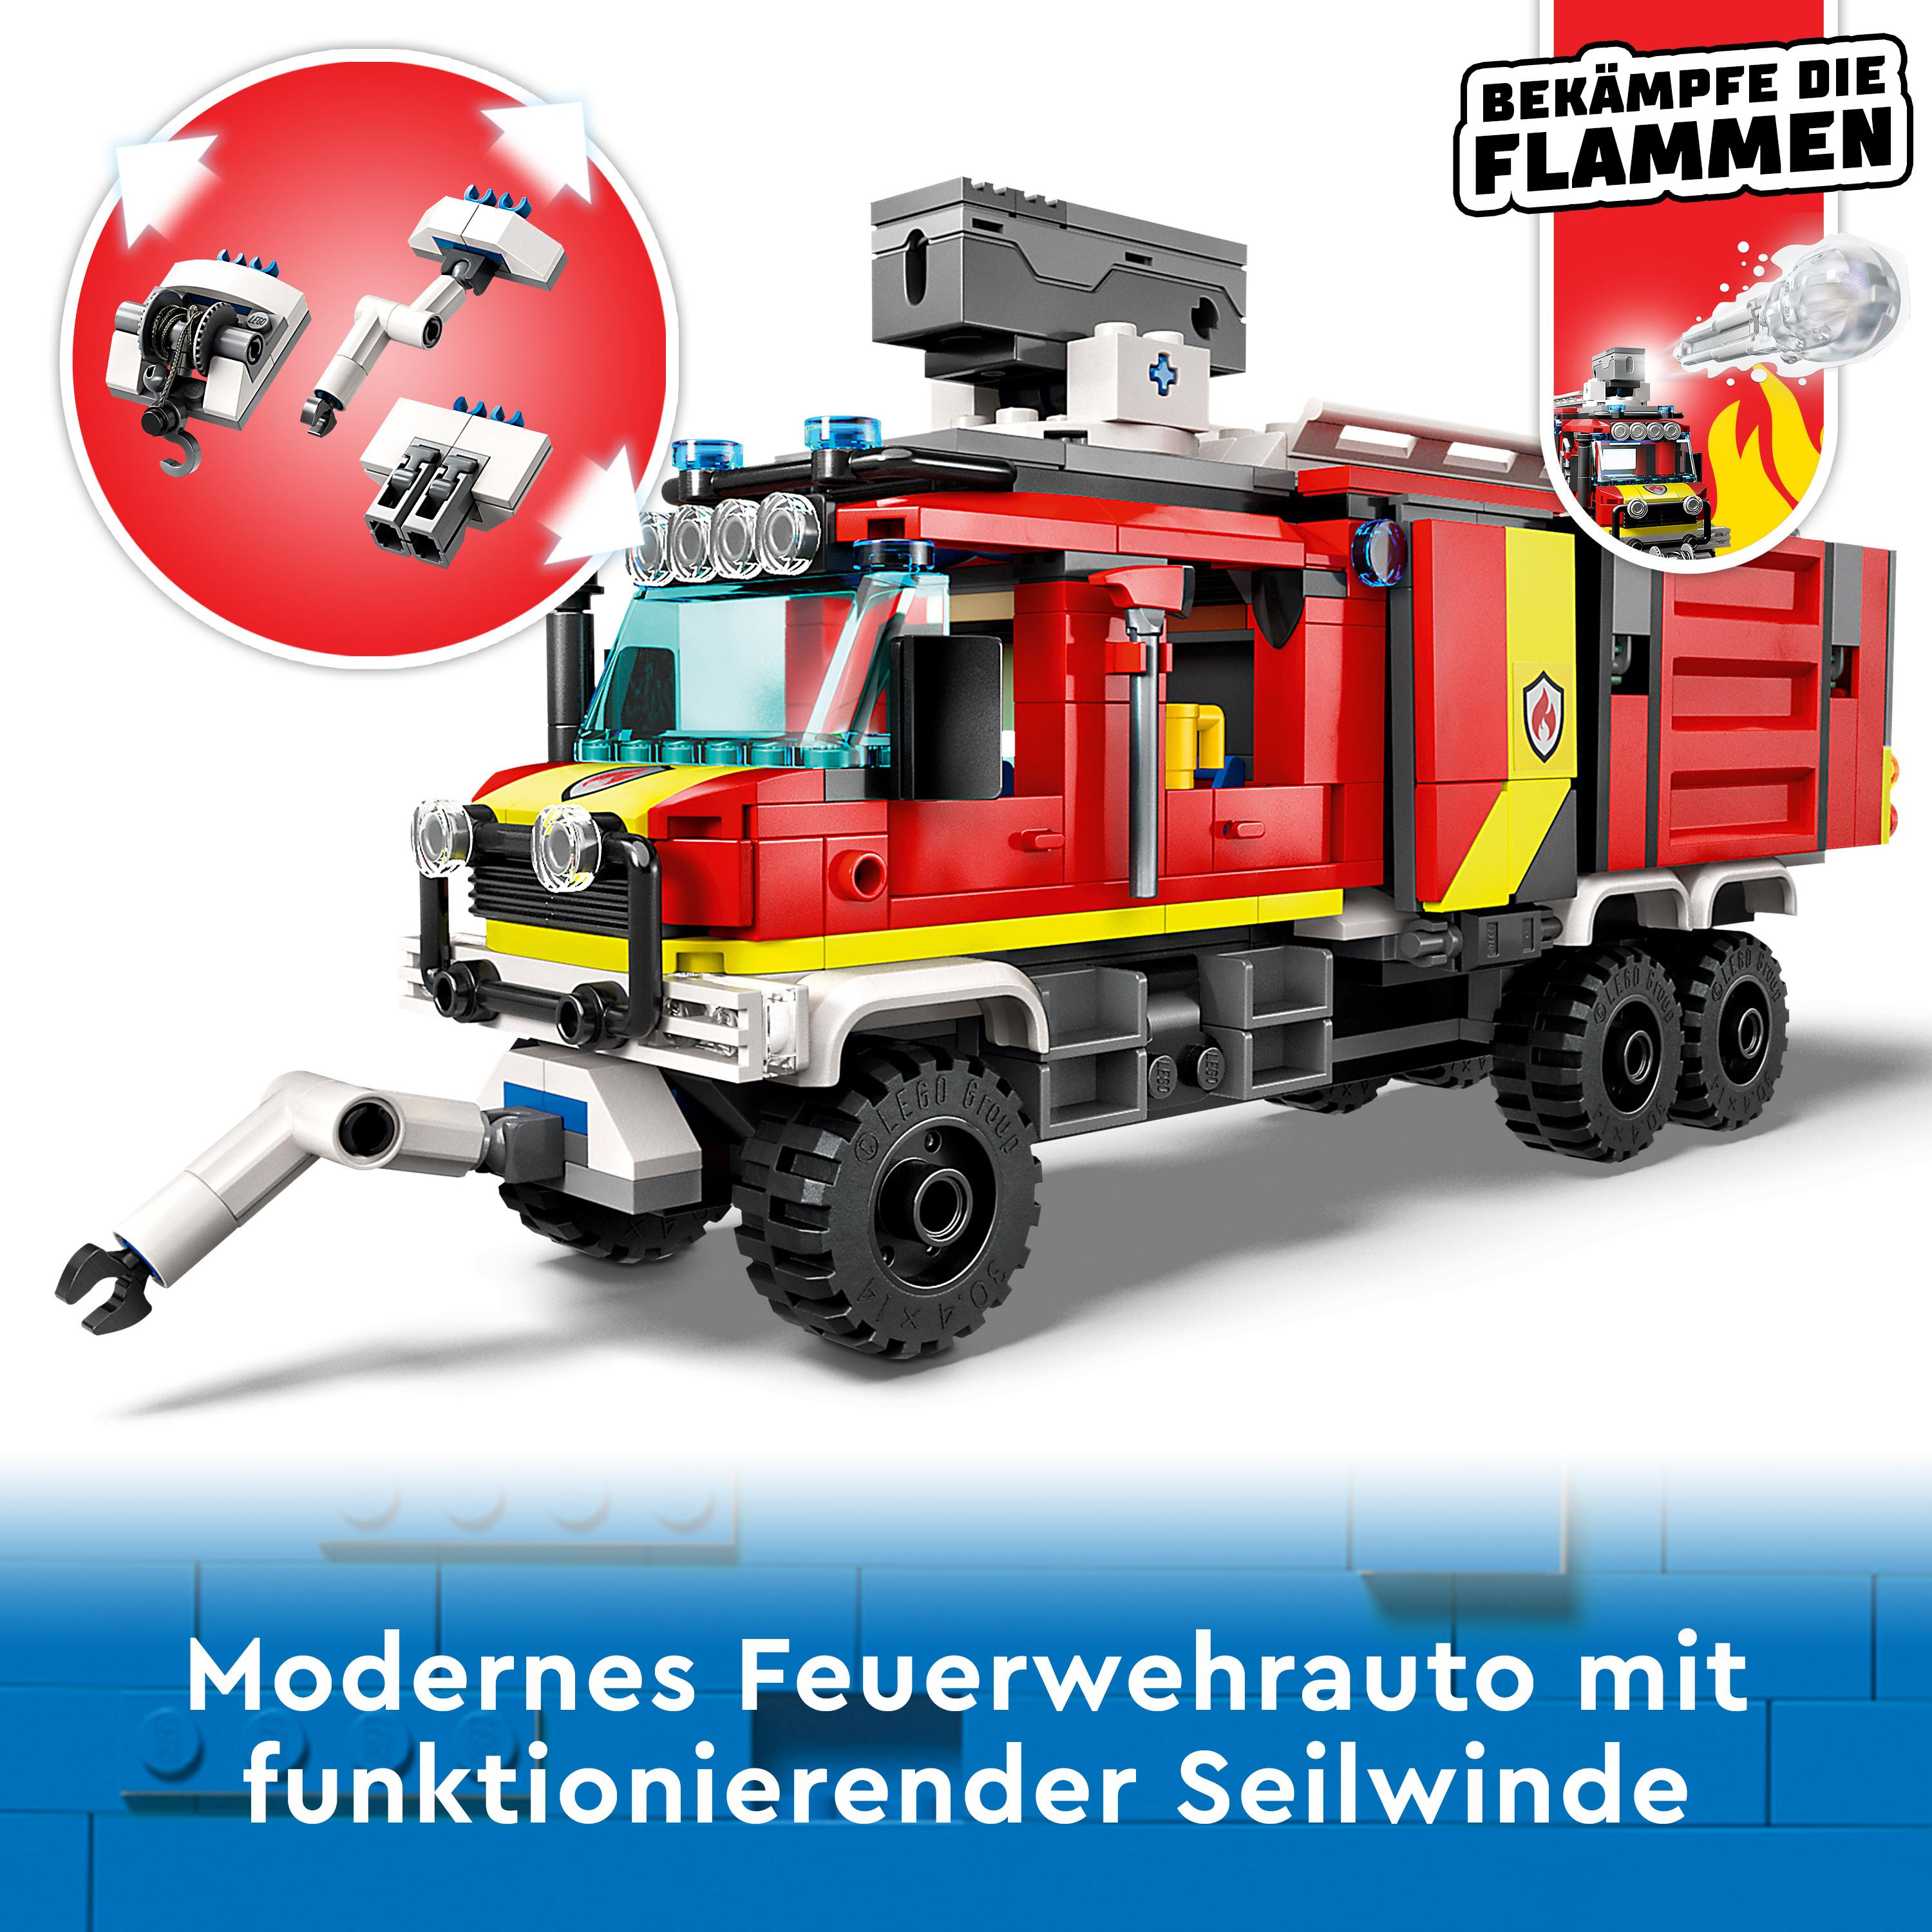 Einsatzleitwagen LEGO Mehrfarbig Bausatz, 60374 der City Feuerwehr